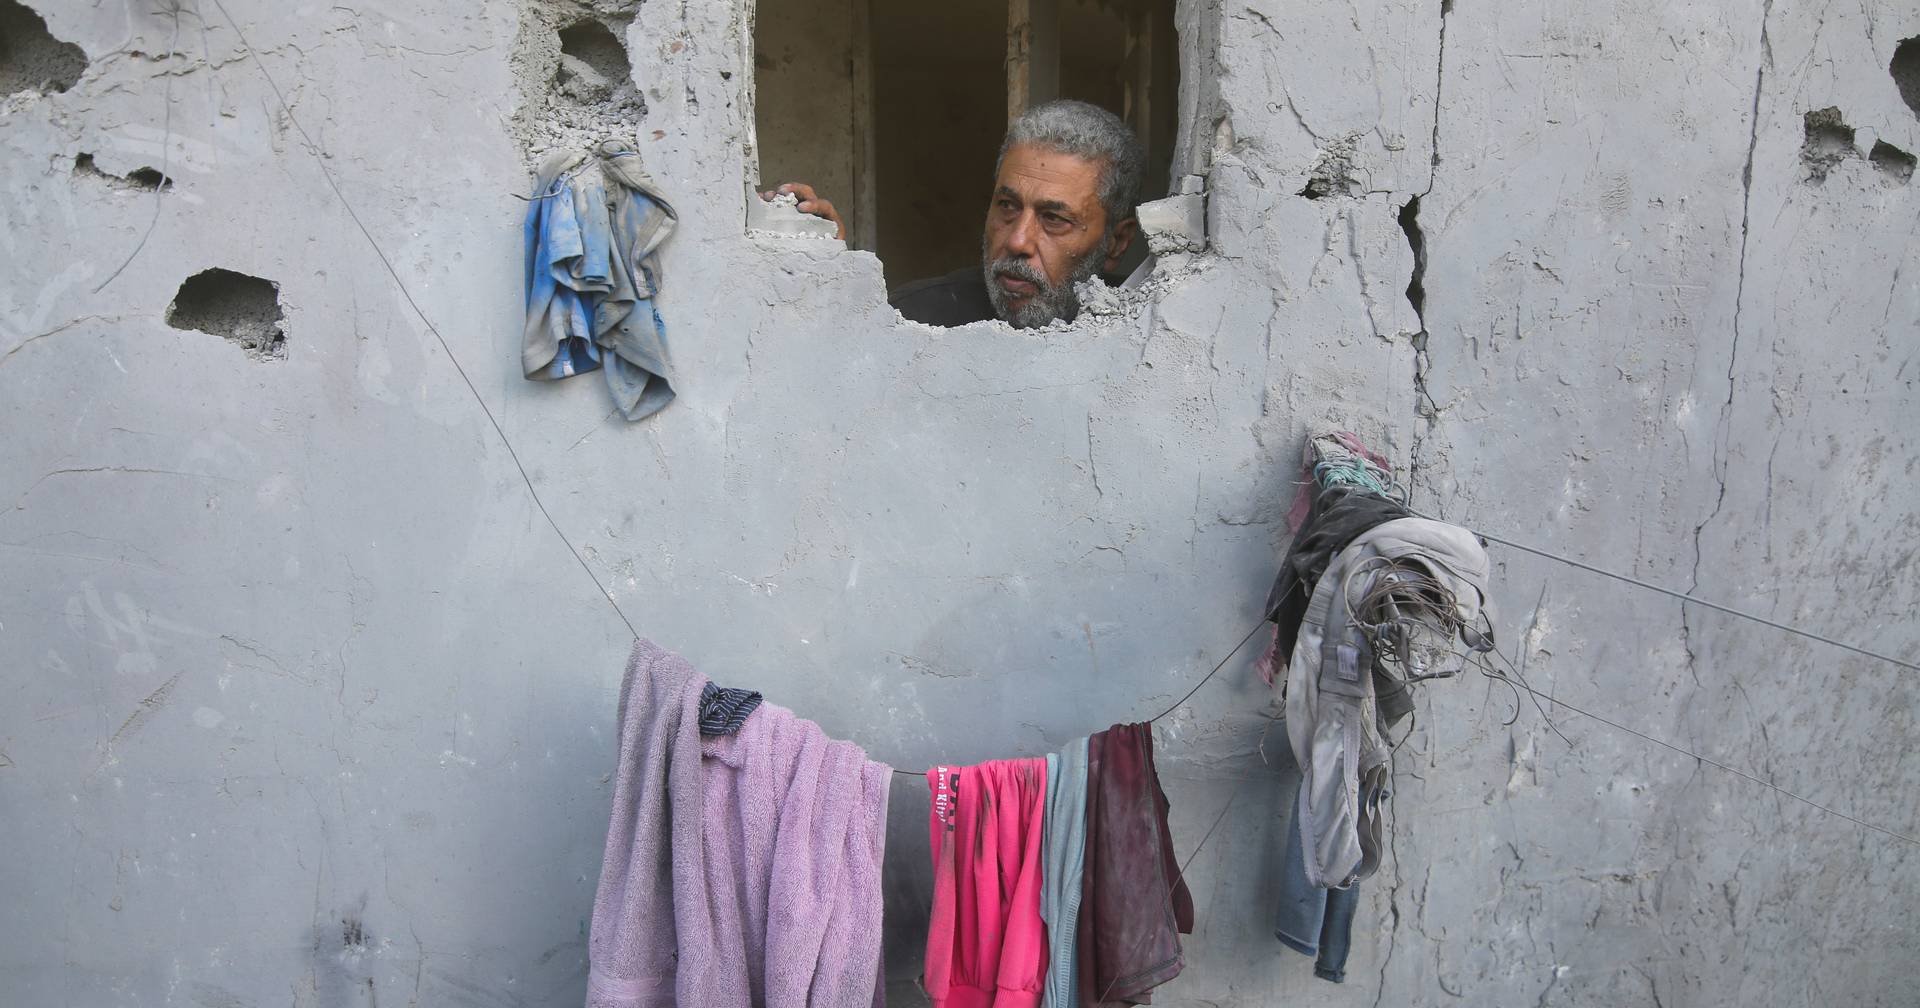 Deutschland stellt 50 Millionen Euro zur Verfügung, um der Zivilbevölkerung in Gaza zu helfen